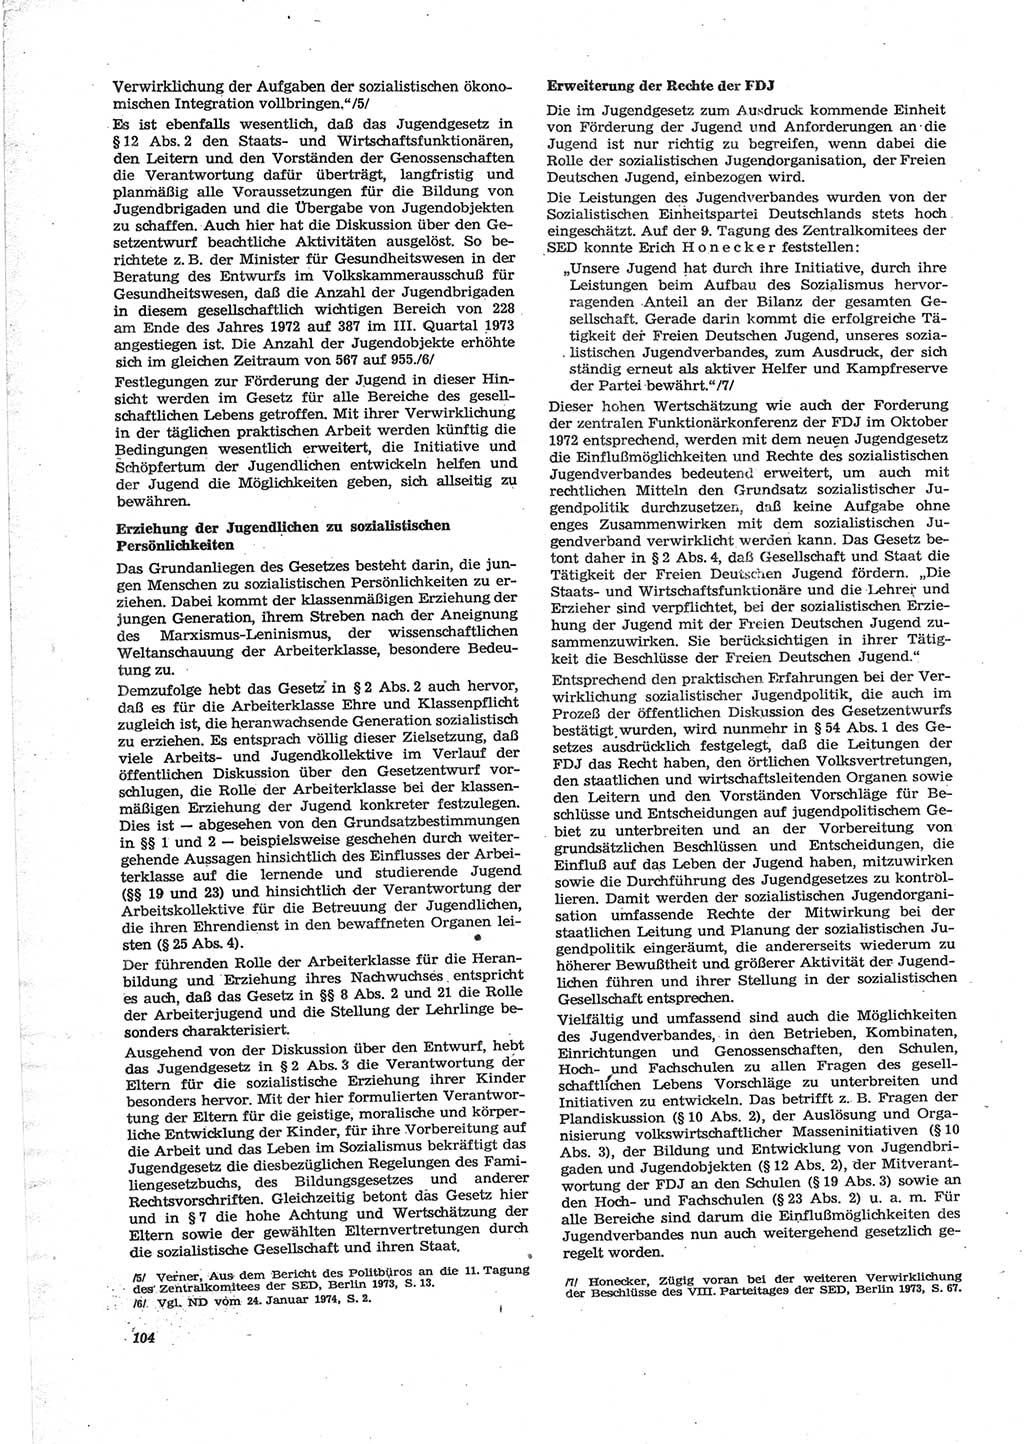 Neue Justiz (NJ), Zeitschrift für Recht und Rechtswissenschaft [Deutsche Demokratische Republik (DDR)], 28. Jahrgang 1974, Seite 104 (NJ DDR 1974, S. 104)